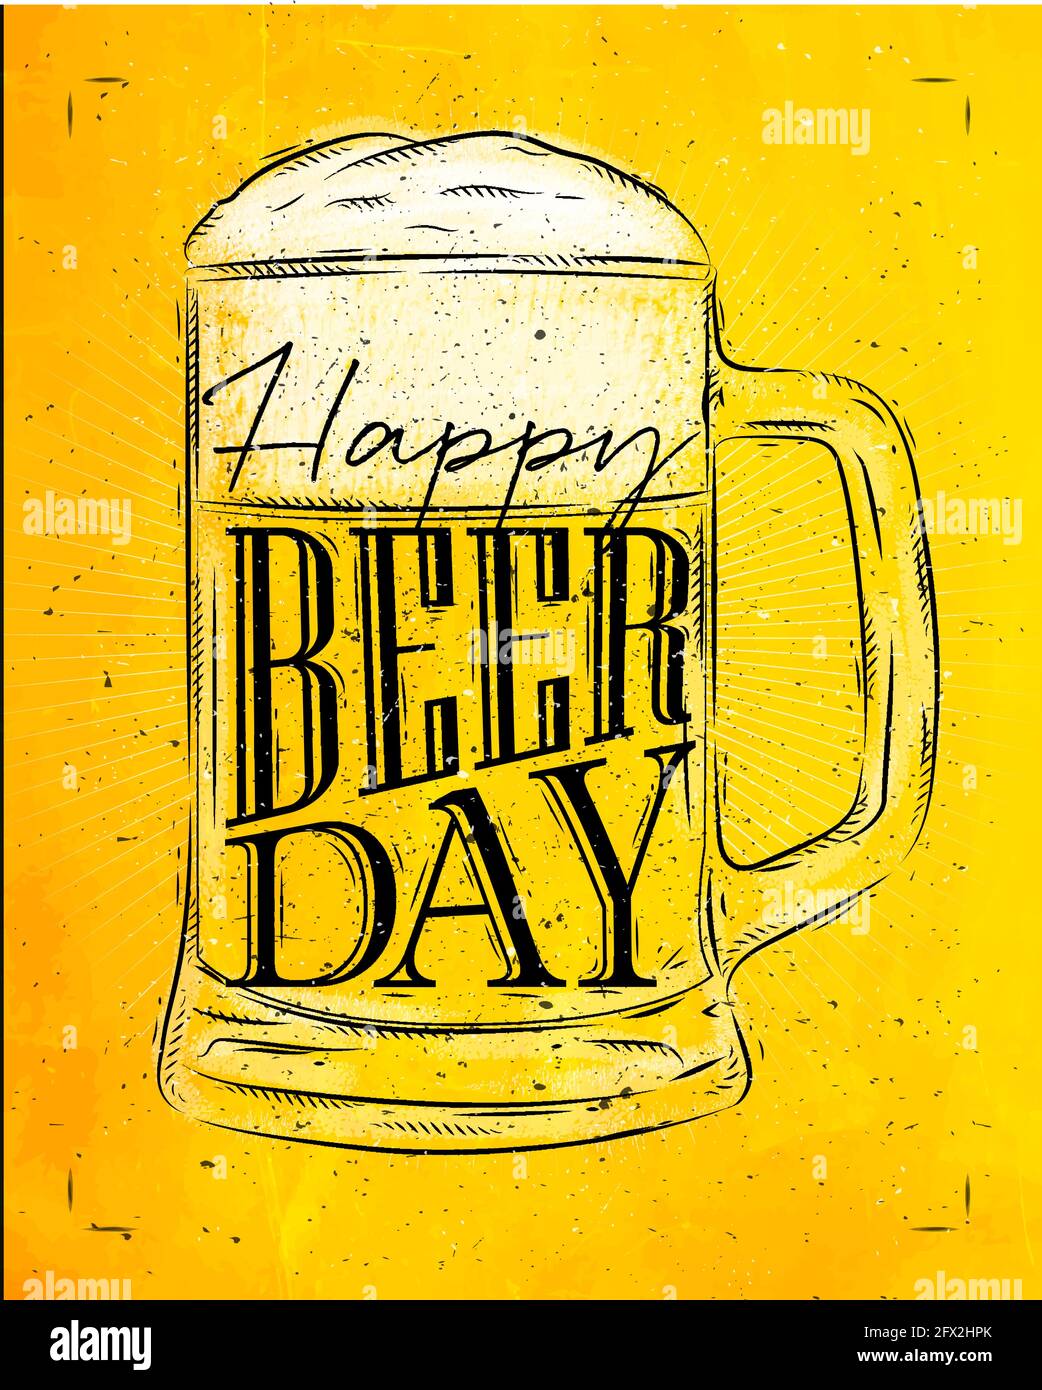 Poster Bierglas Schriftzug Happy Beer Day Zeichnung im Vintage Stil mit  Kohle auf gelbem Papier Hintergrund Stock-Vektorgrafik - Alamy